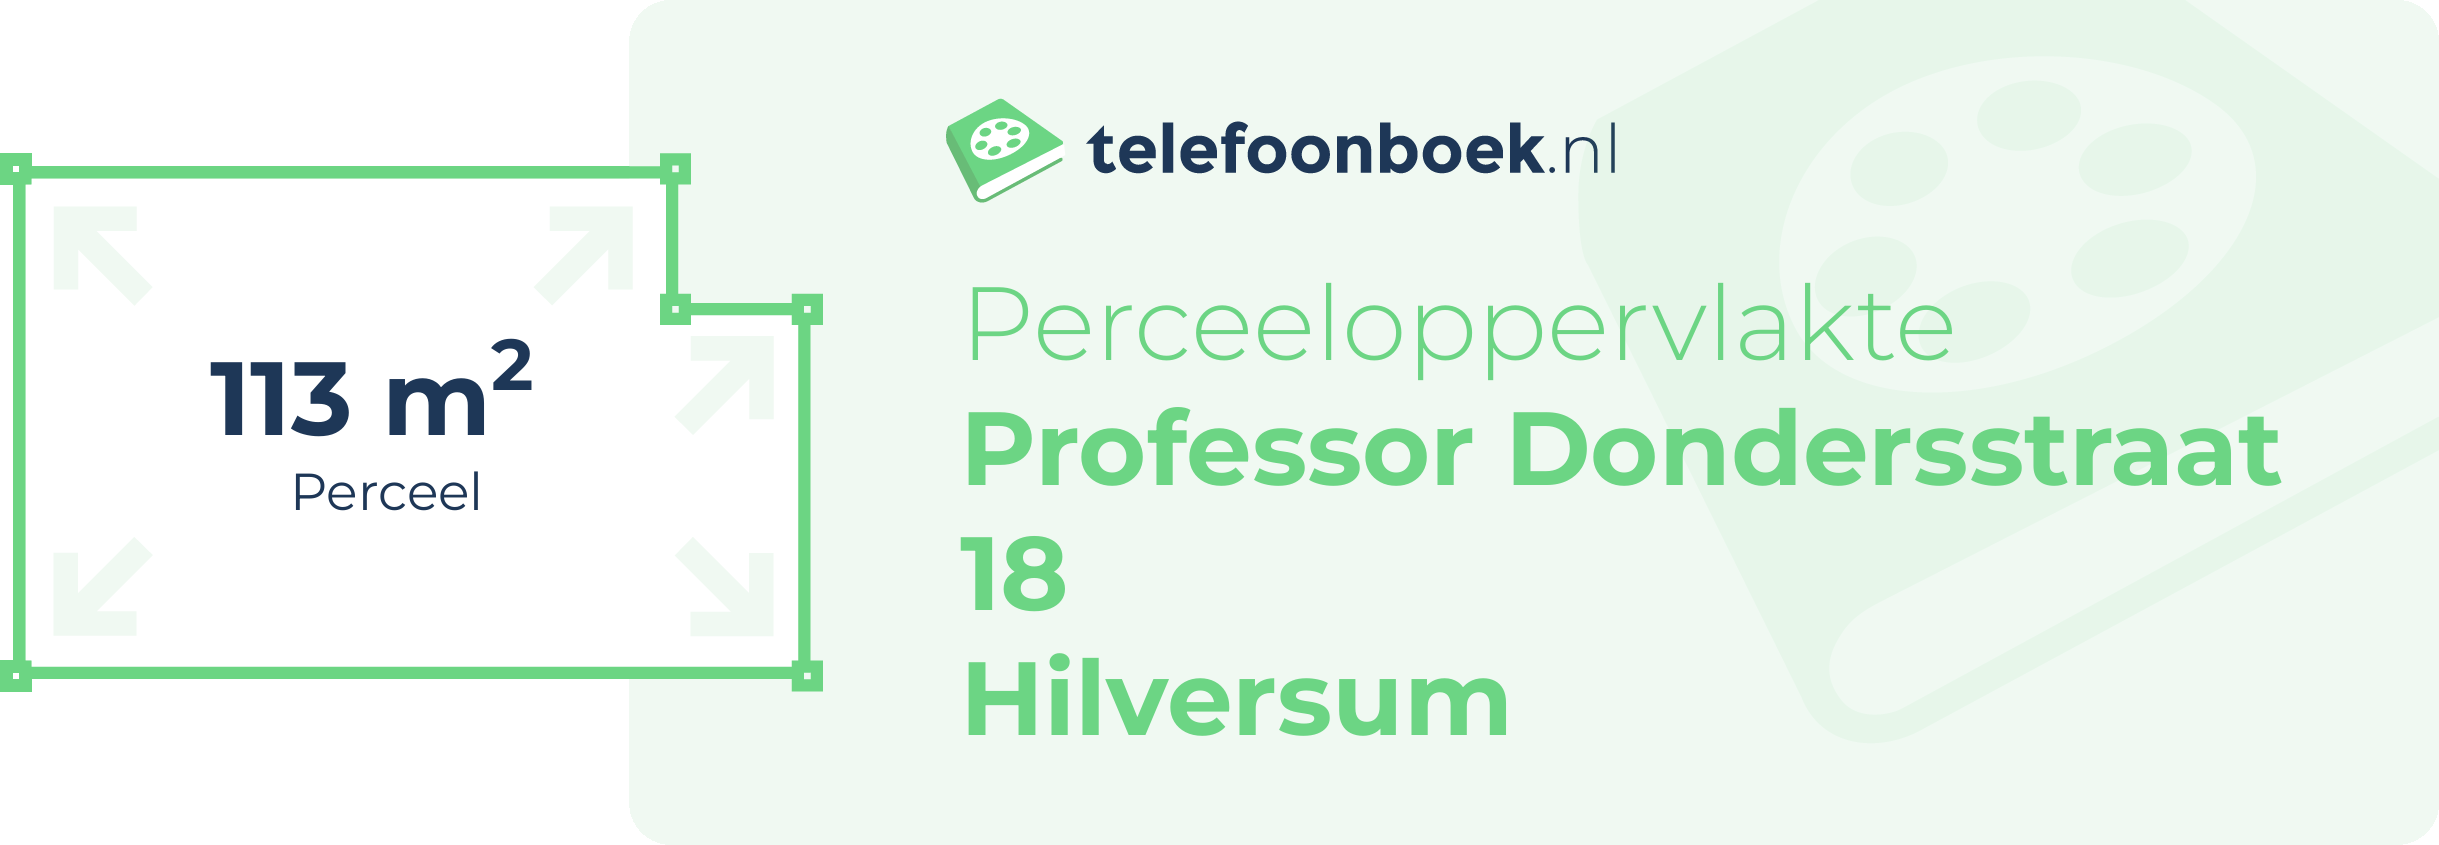 Perceeloppervlakte Professor Dondersstraat 18 Hilversum